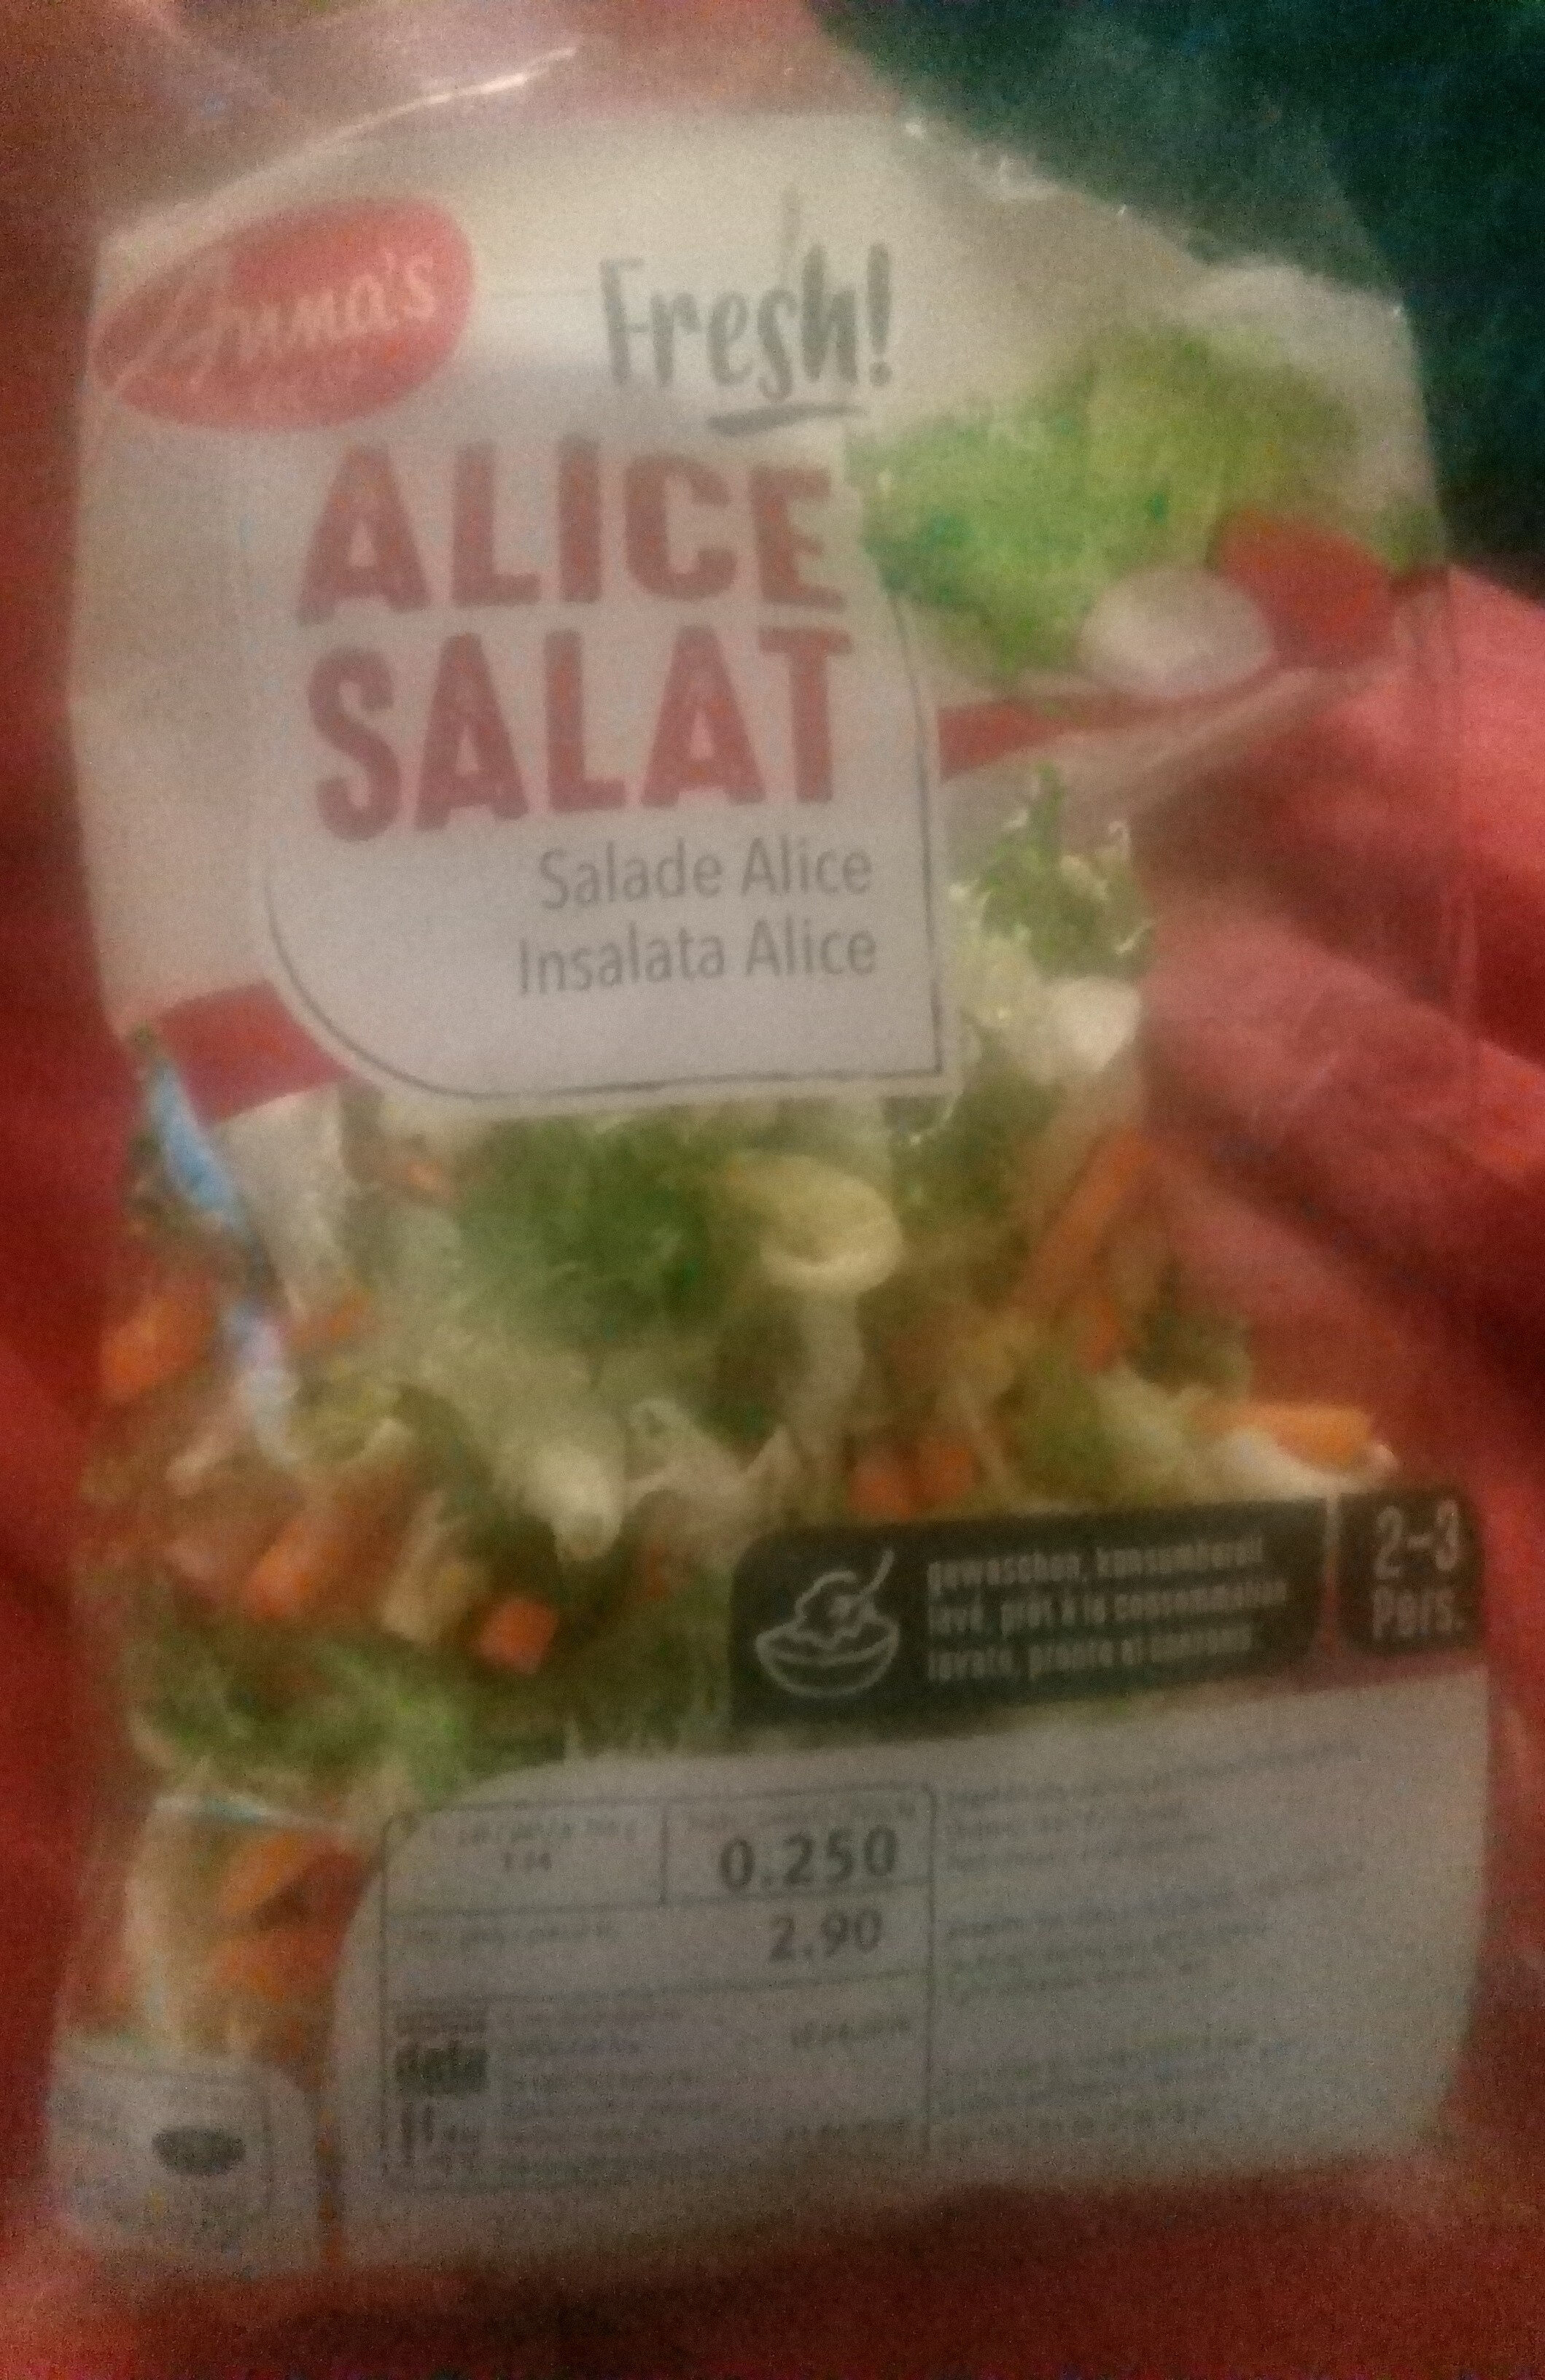 Alice salat - Prodotto - en